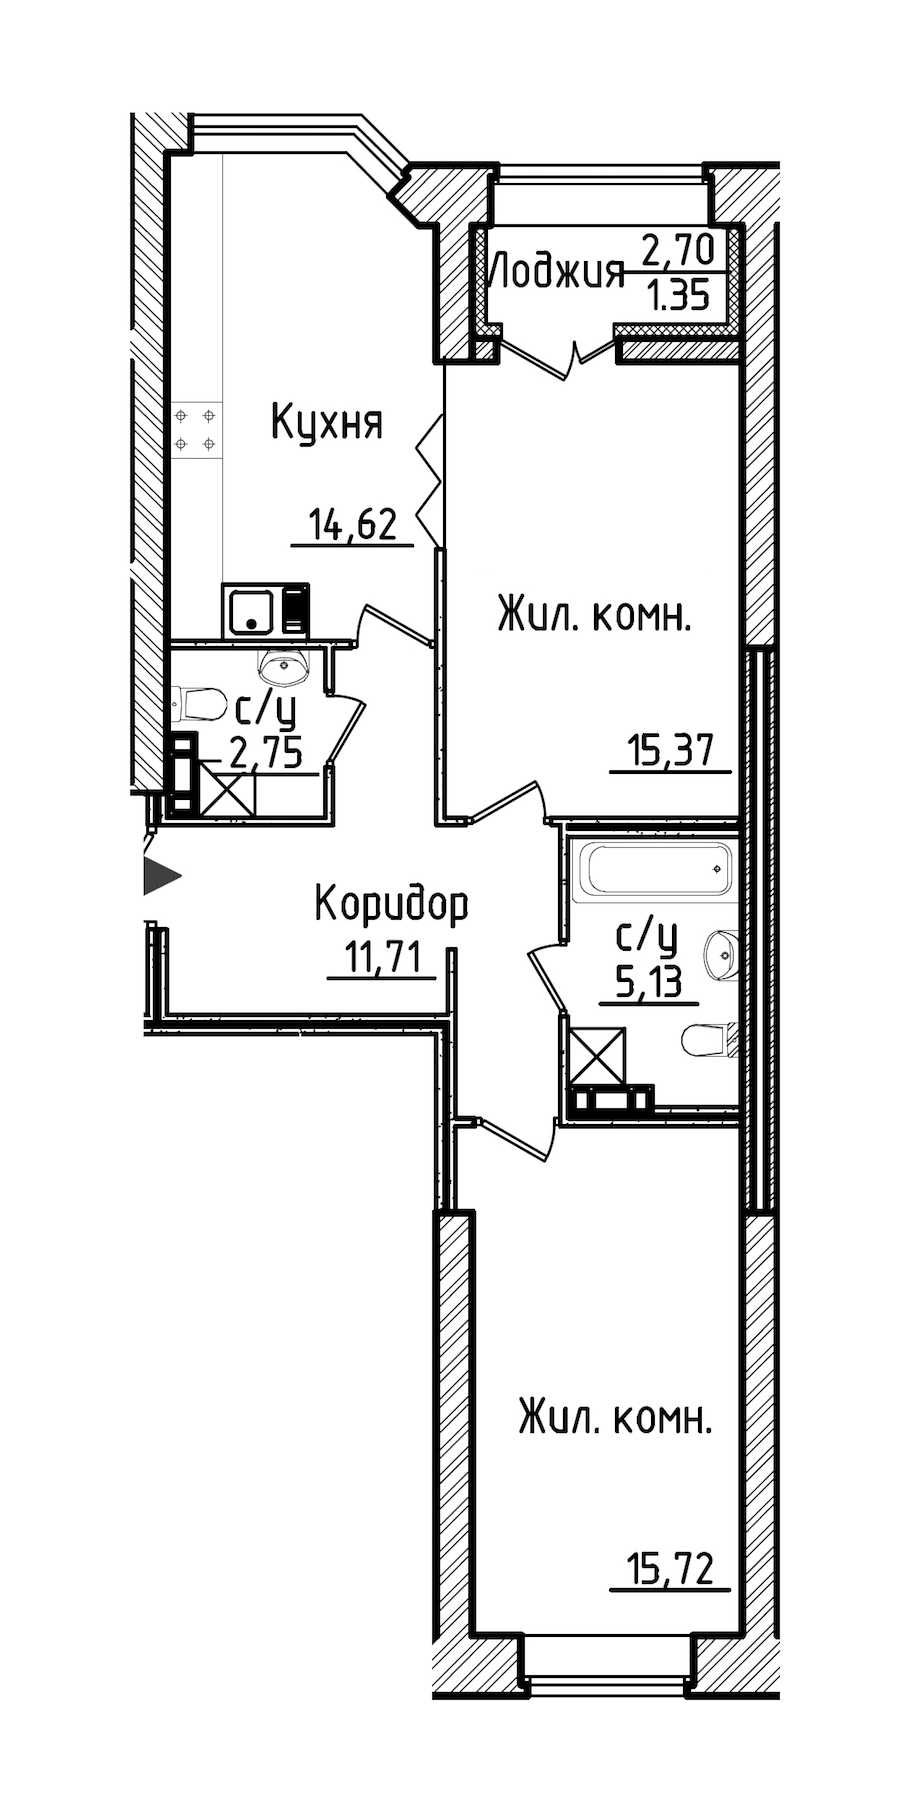 Двухкомнатная квартира в : площадь 66.65 м2 , этаж: 3 - 6 – купить в Санкт-Петербурге